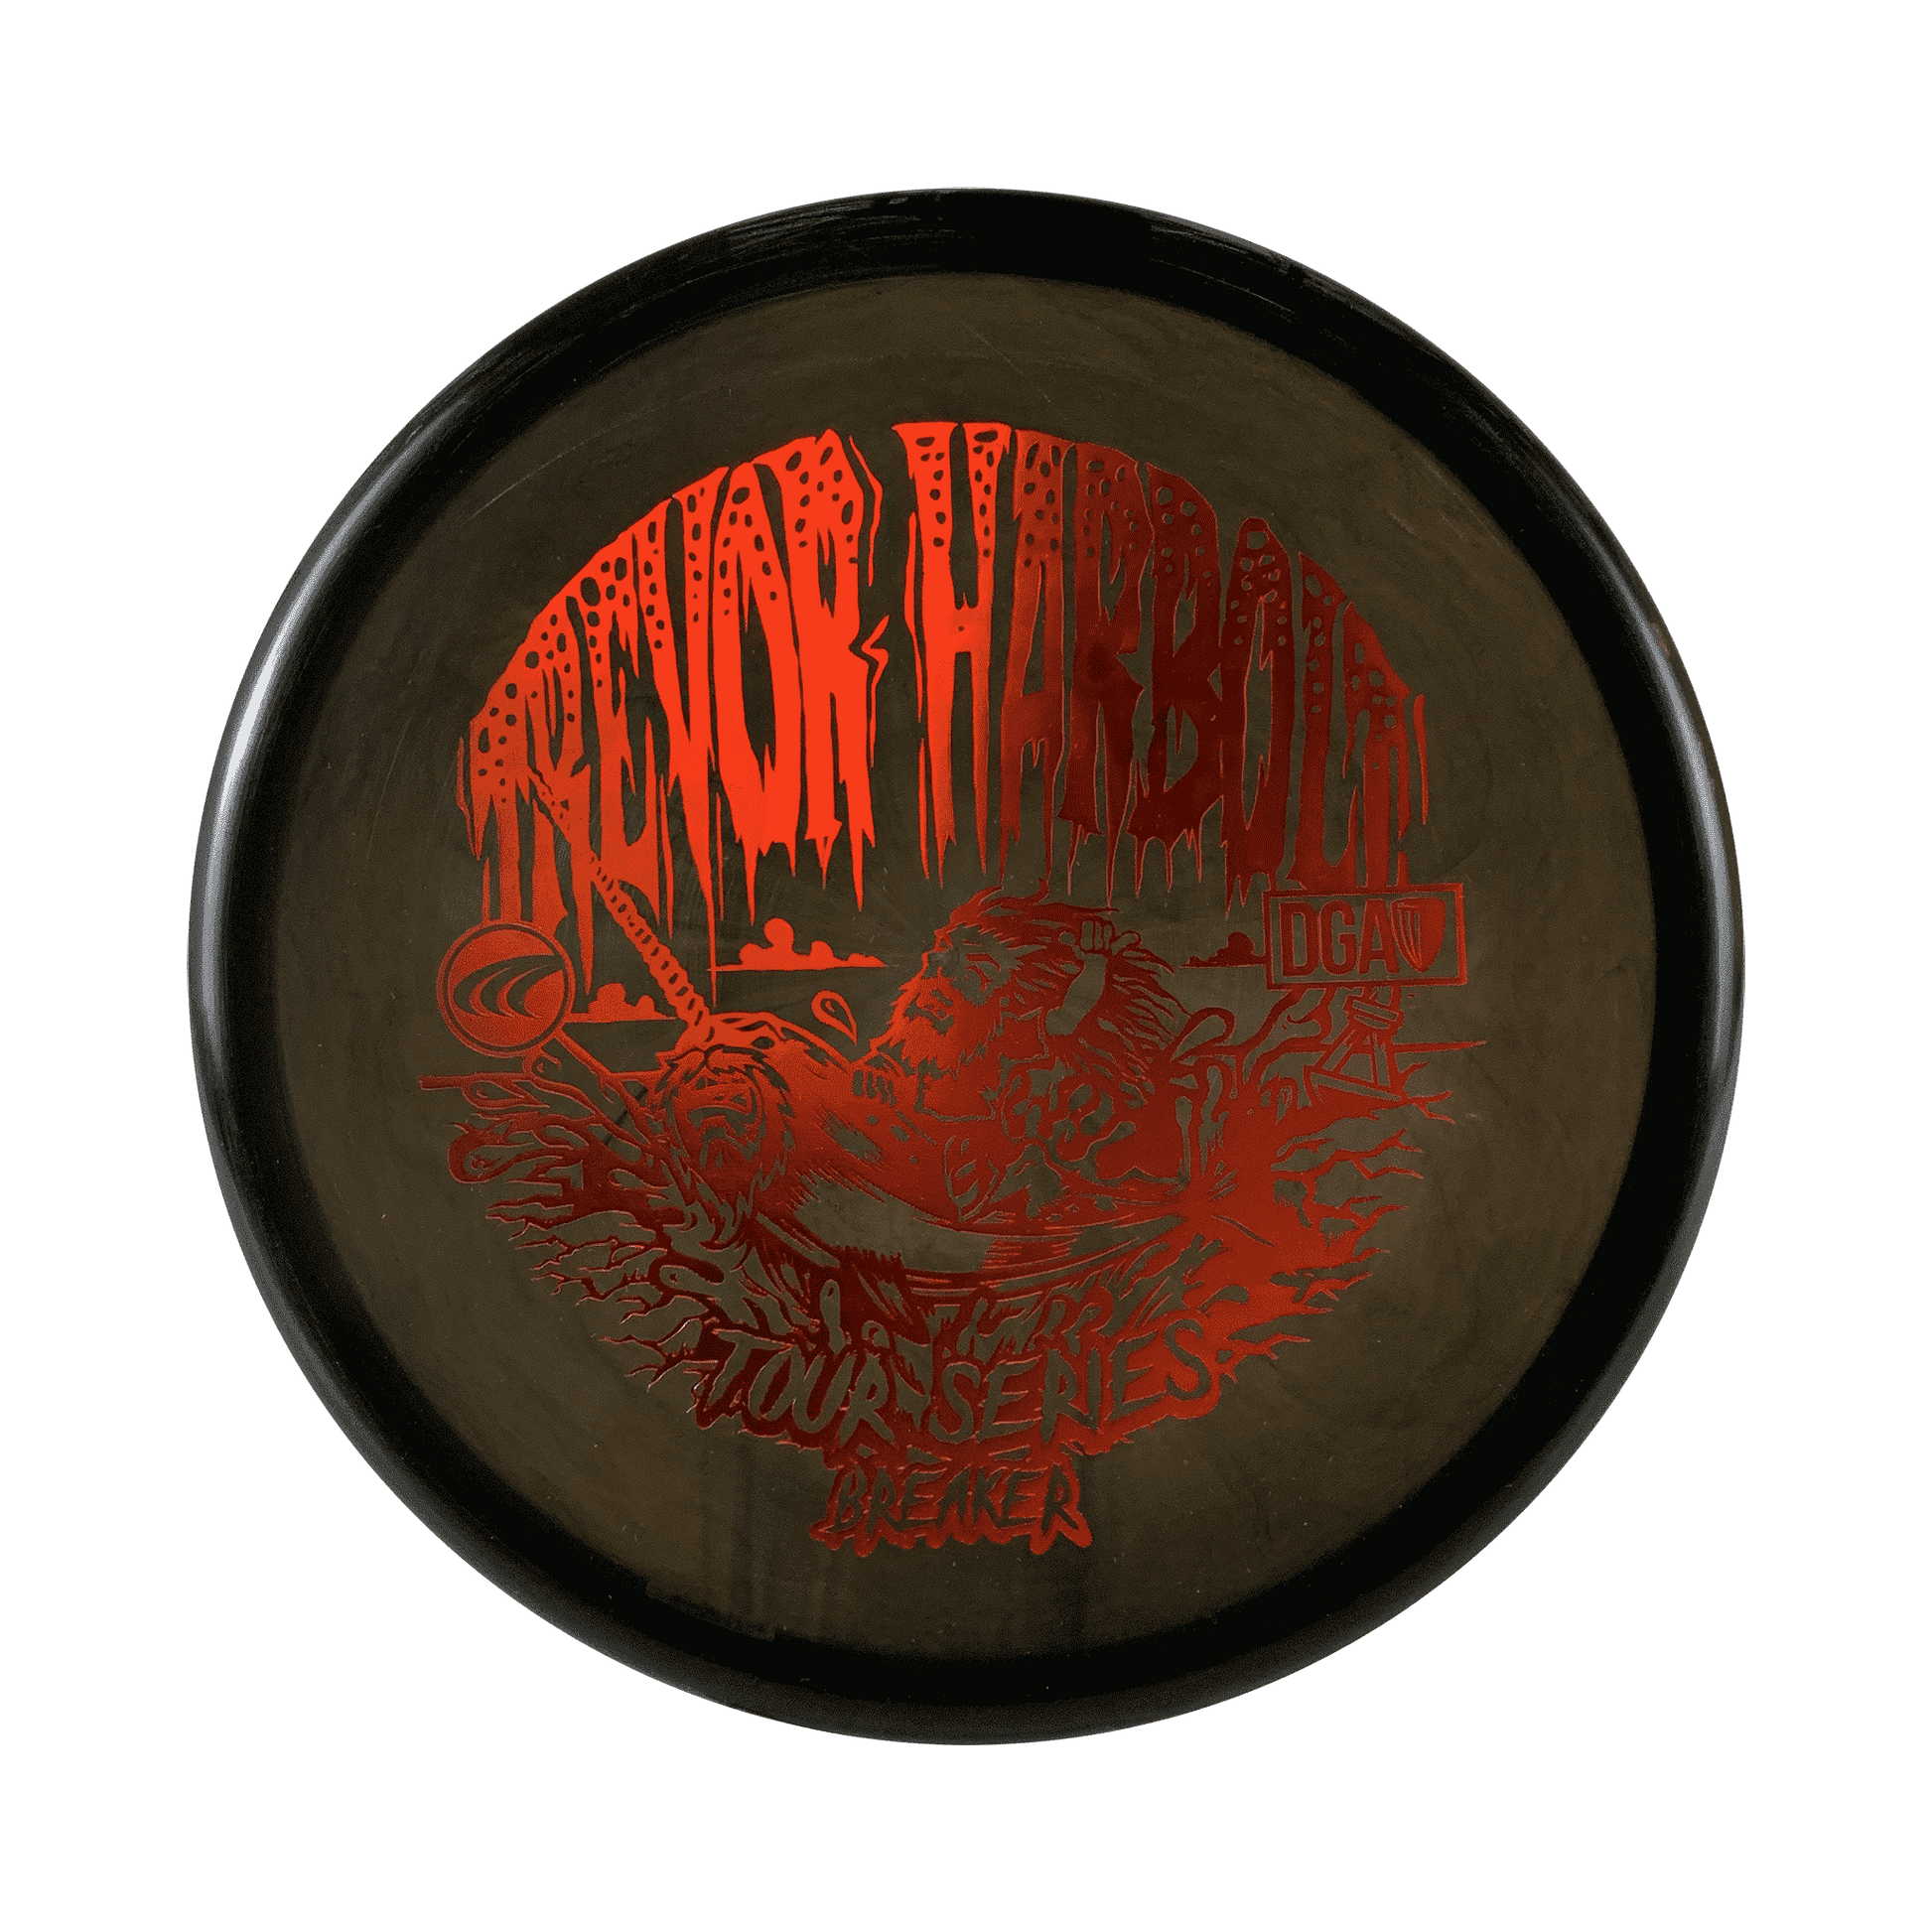 Signature Pro Line Swirl Breaker - Tour Series Disc DGA black 170 